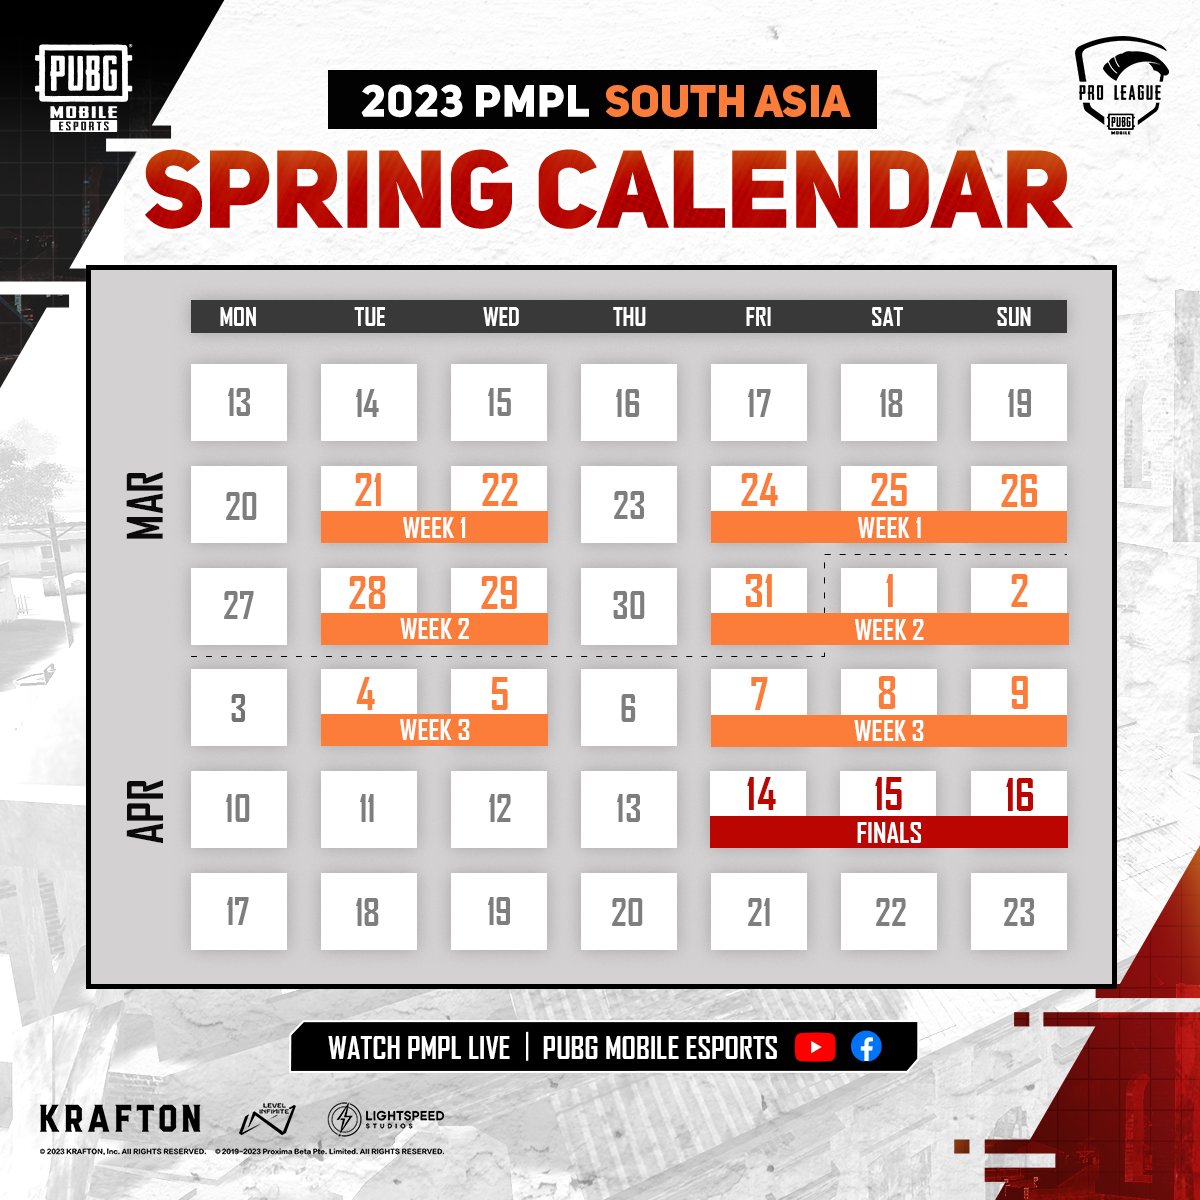 PMPL South Asia 2023 Spring: PUBG Mobile Esports annonce le calendrier de la PUBG Mobile Pro League South Asia 2023 Spring, VOIR LES DÉTAILS